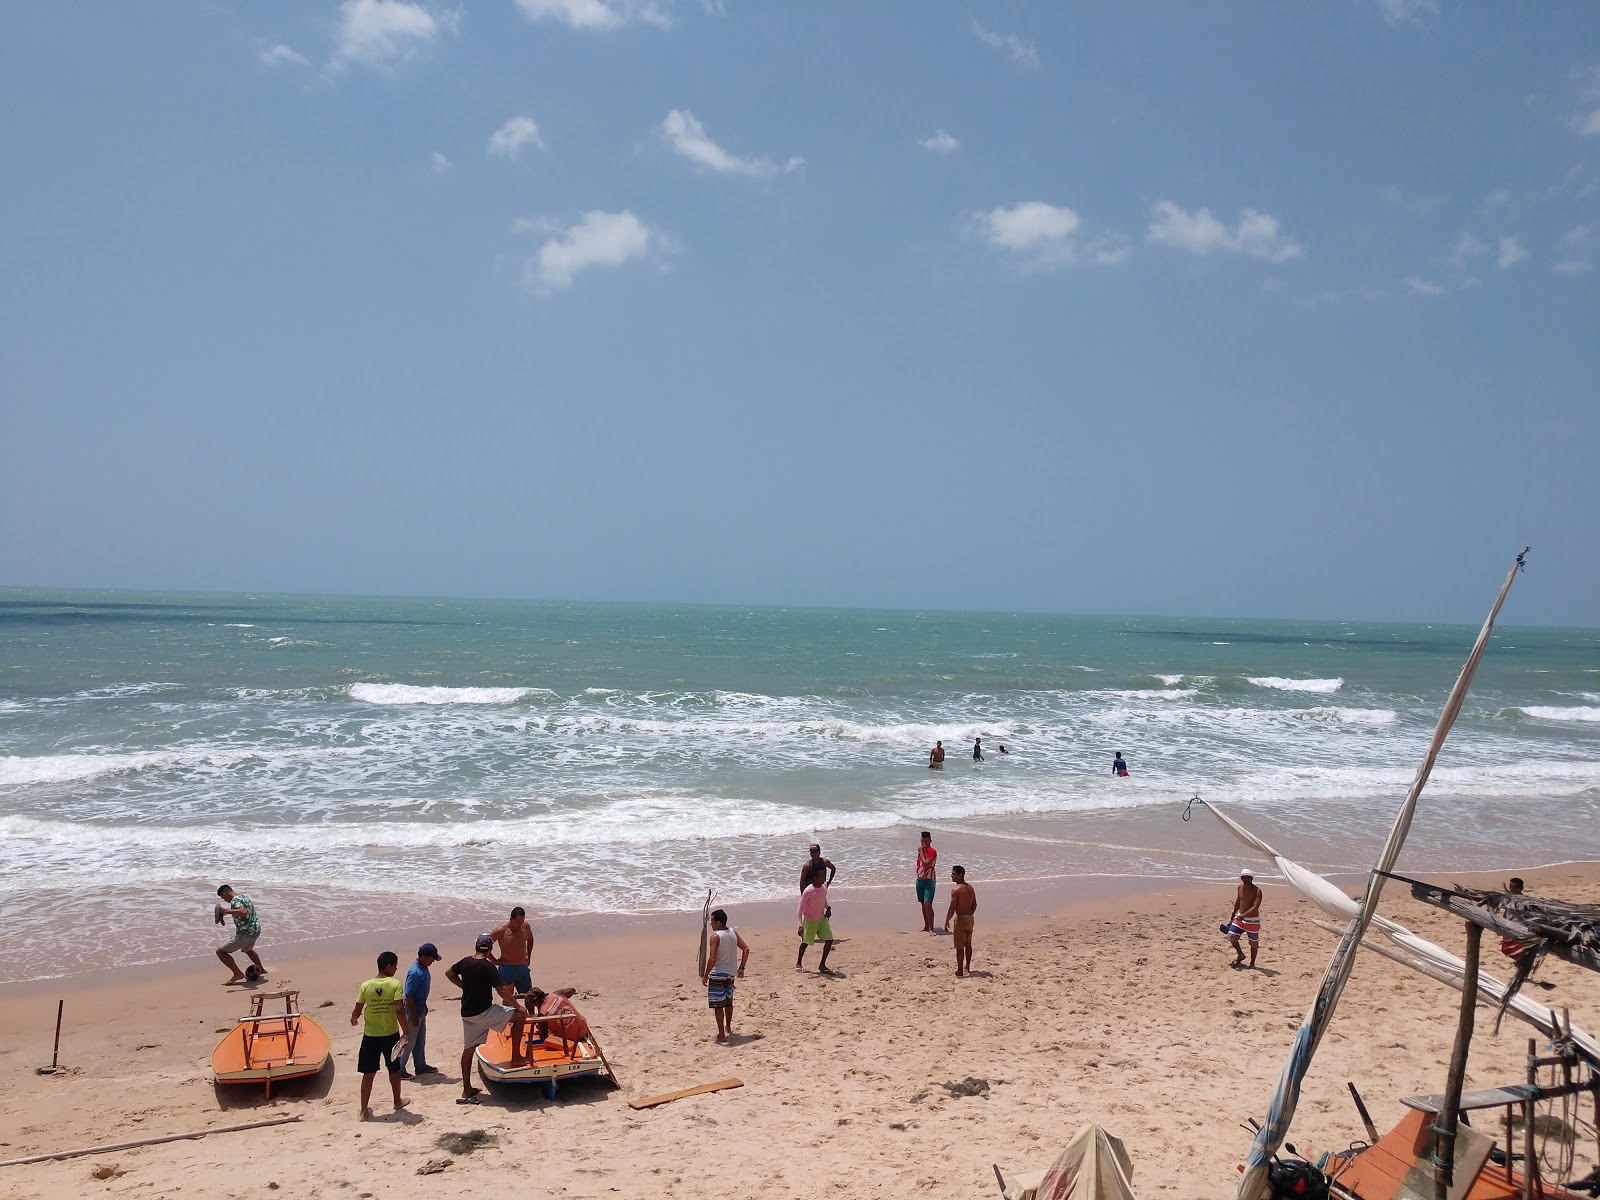 奎沙巴二海滩的照片 - 受到放松专家欢迎的热门地点